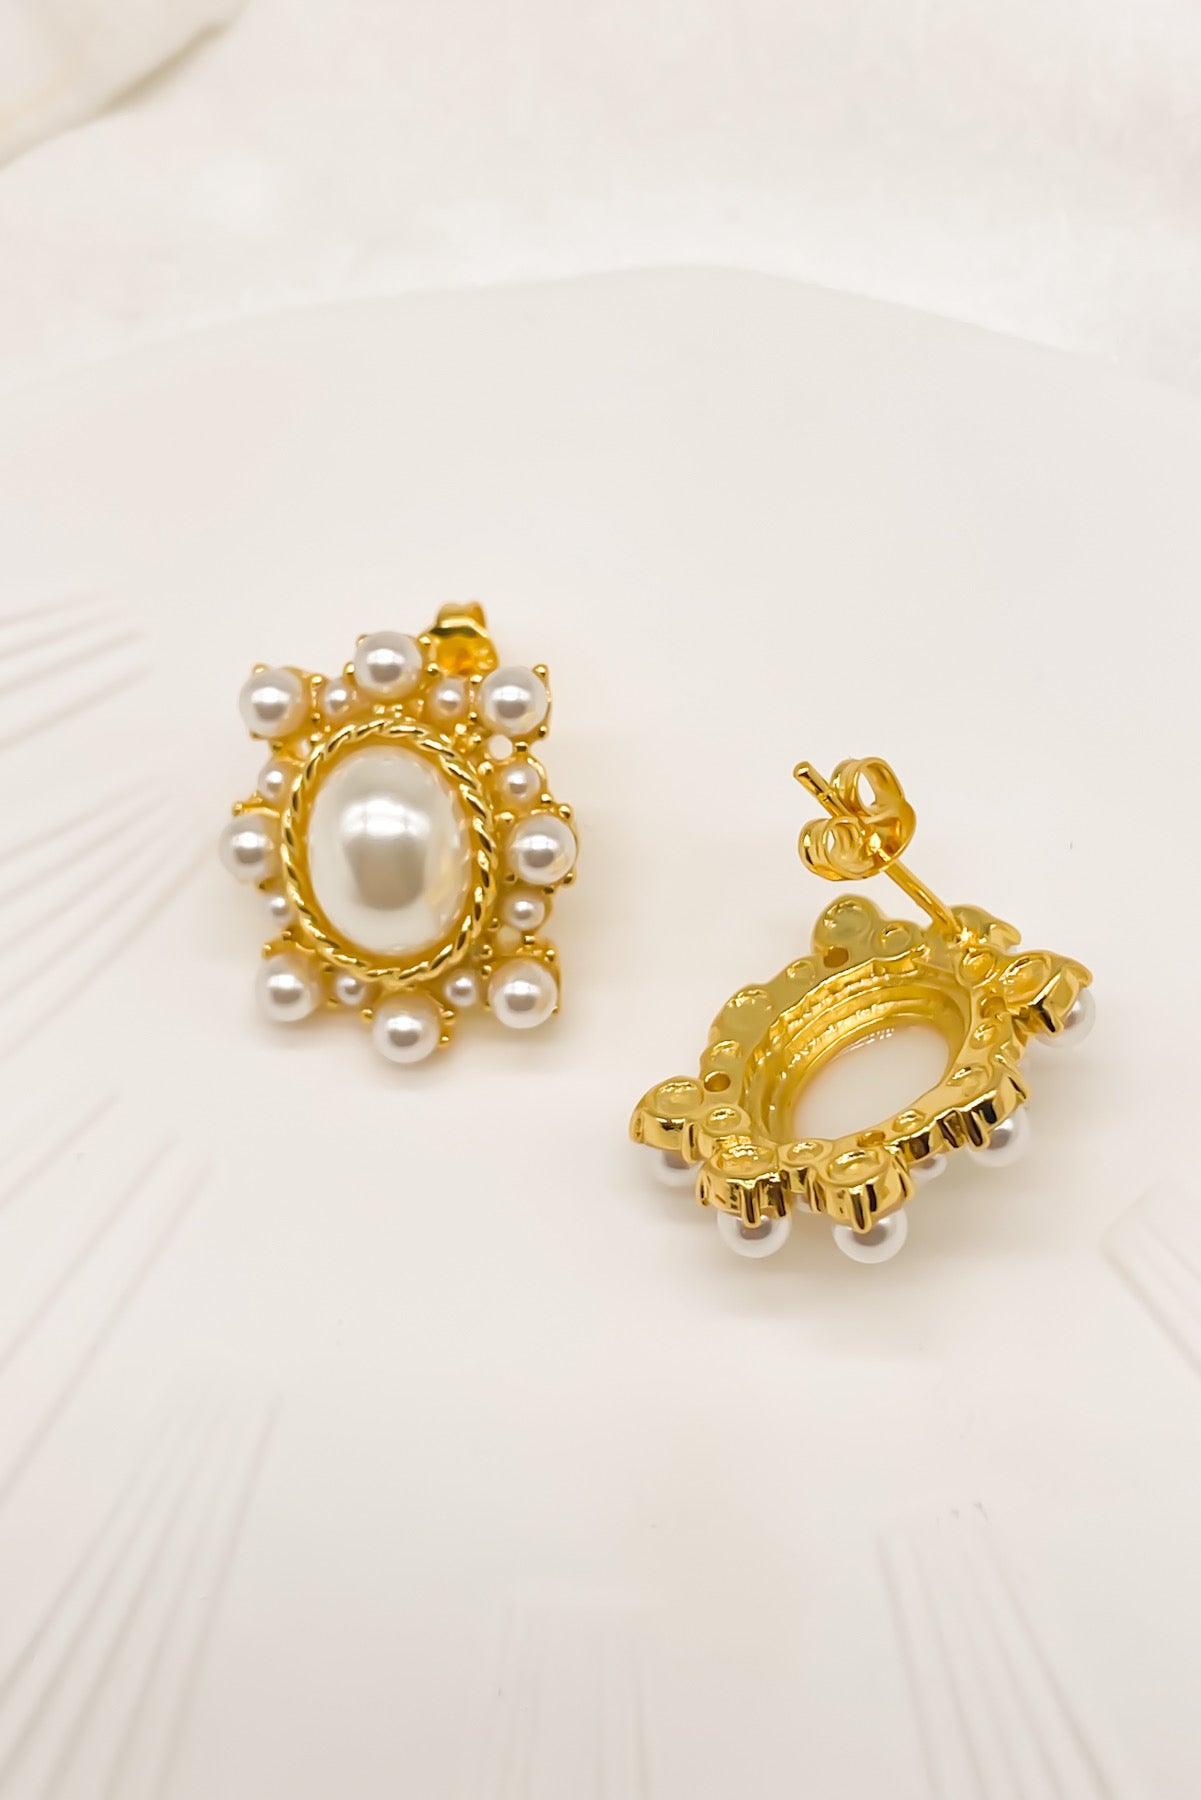 SKYE Shop Chic Modern Elegant Classy Women Jewelry French Parisian Minimalist Haley Pearl Earrings 10